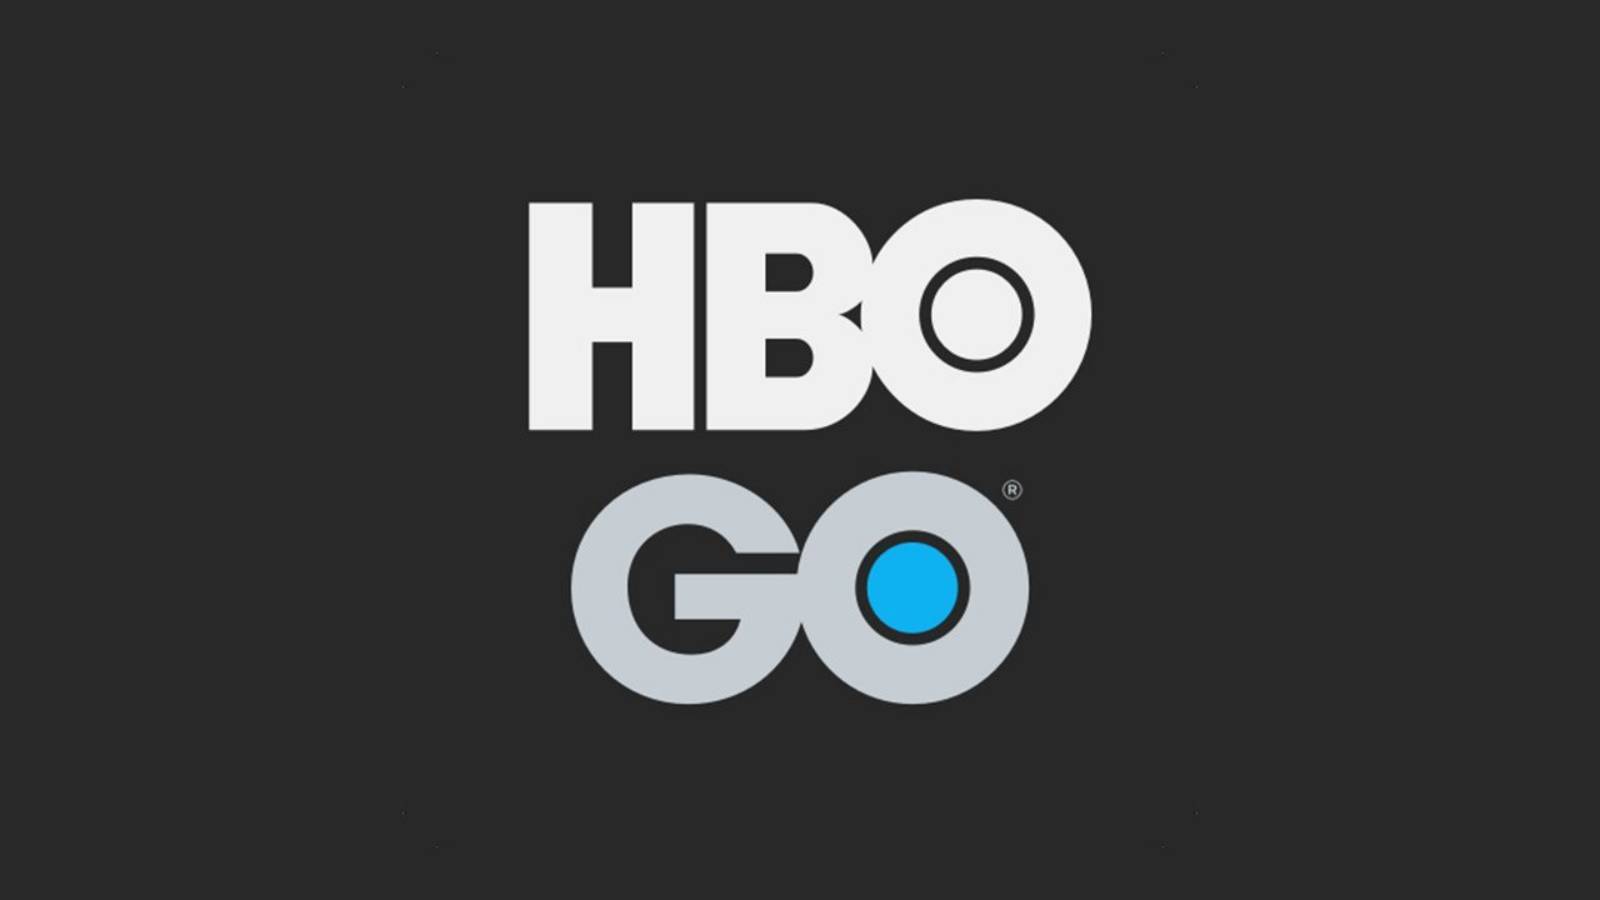 HBO Go maj